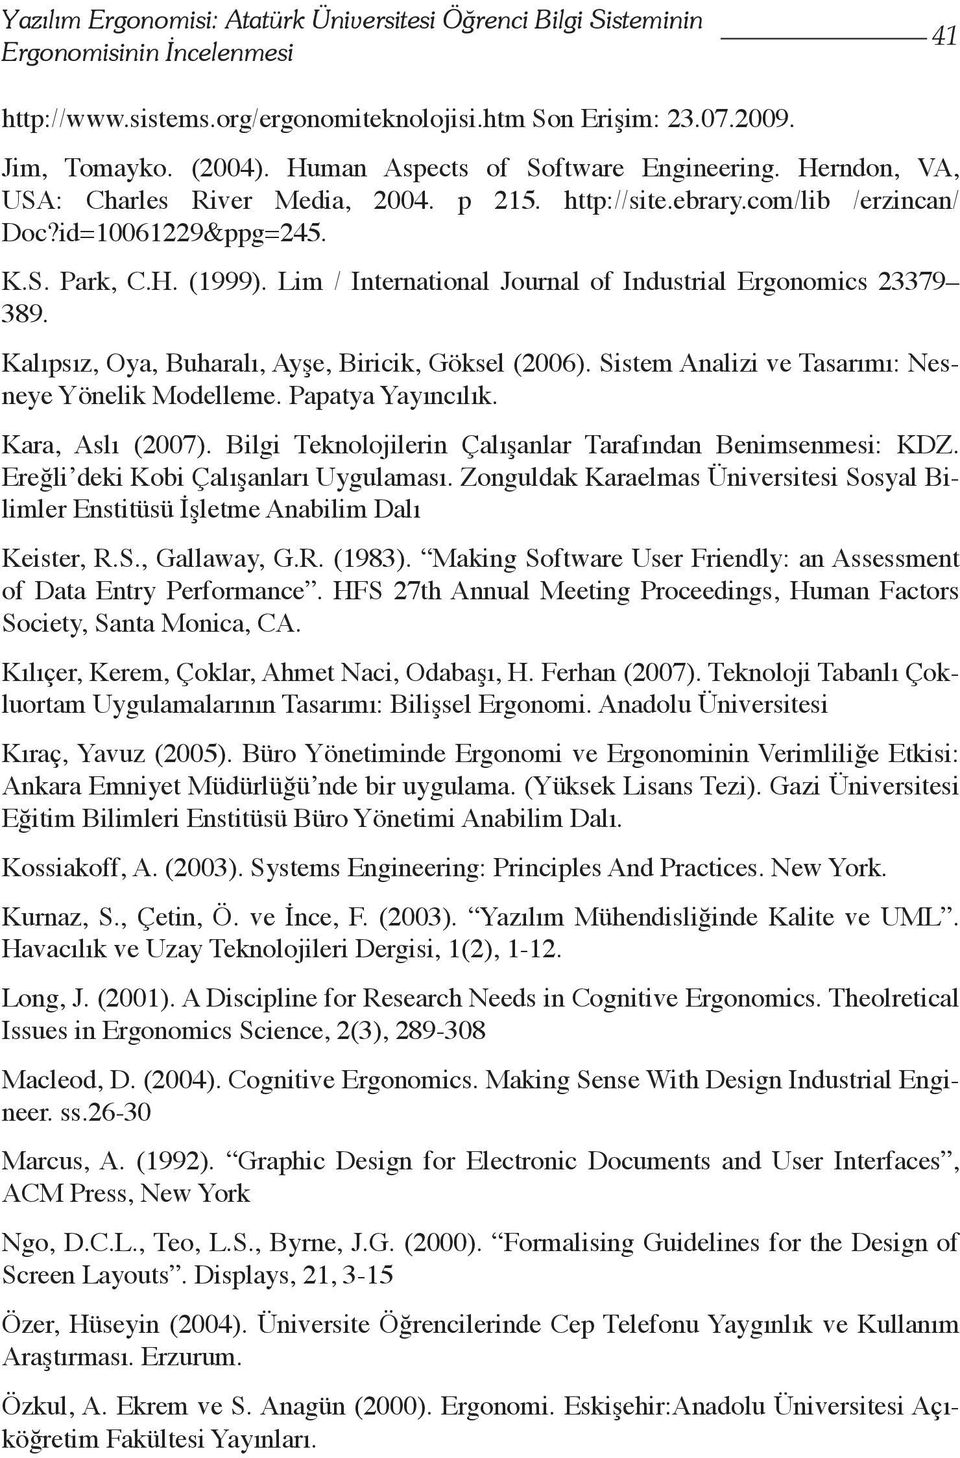 Lim / International Journal of Industrial Ergonomics 23379 389. Kalıpsız, Oya, Buharalı, Ayşe, Biricik, Göksel (2006). Sistem Analizi ve Tasarımı: Nesneye Yönelik Modelleme. Papatya Yayıncılık.